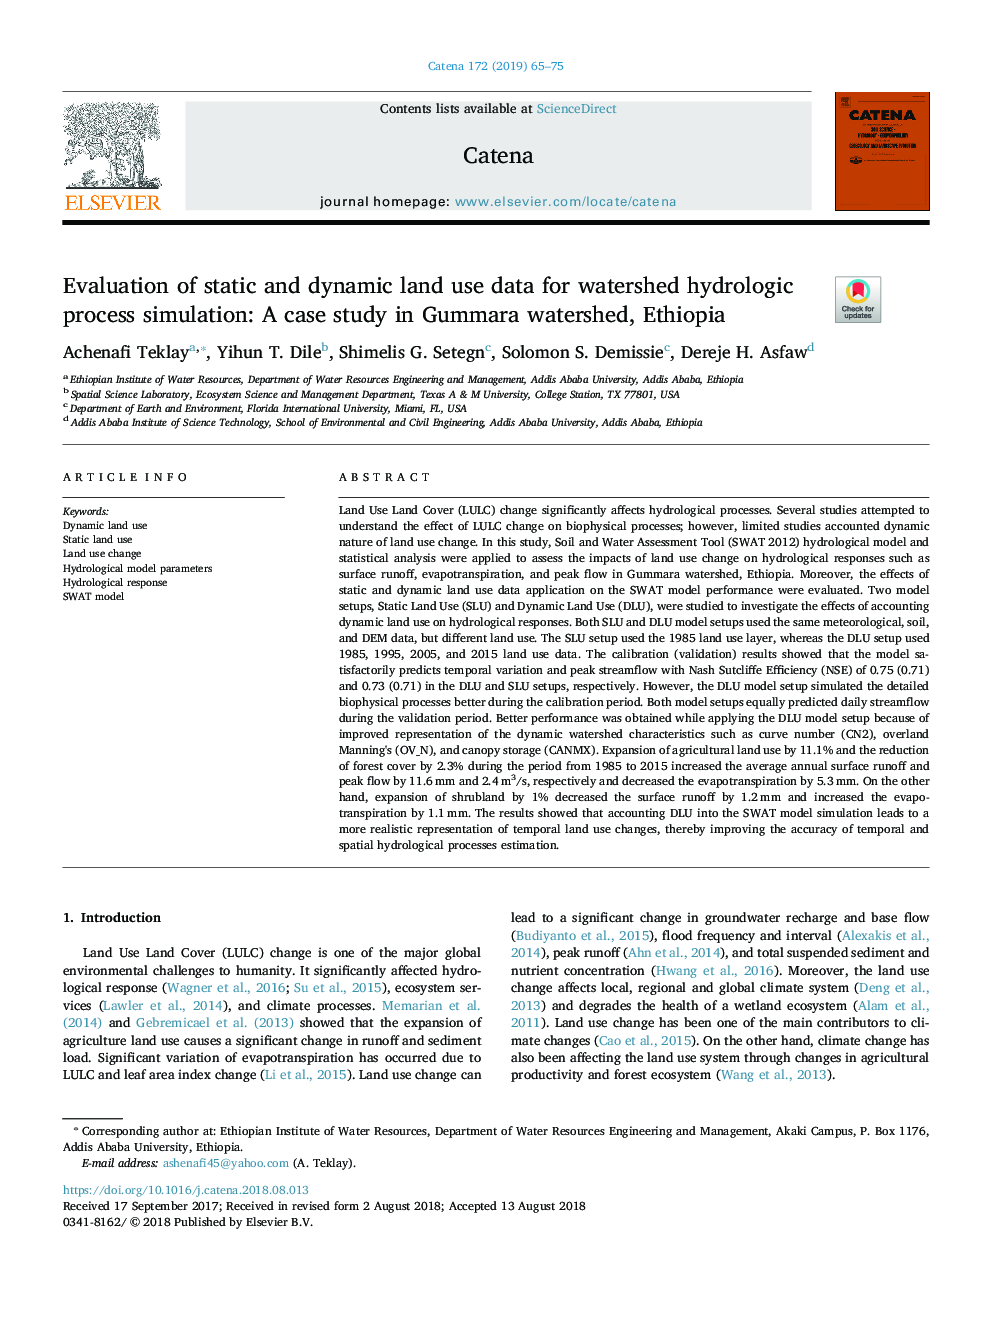 ارزیابی داده های استفاده از داده های استاتیک و دینامیکی برای شبیه سازی هیدرولوژیکی حوضه: مطالعه موردی در حوضه ی گوممارا، اتیوپی